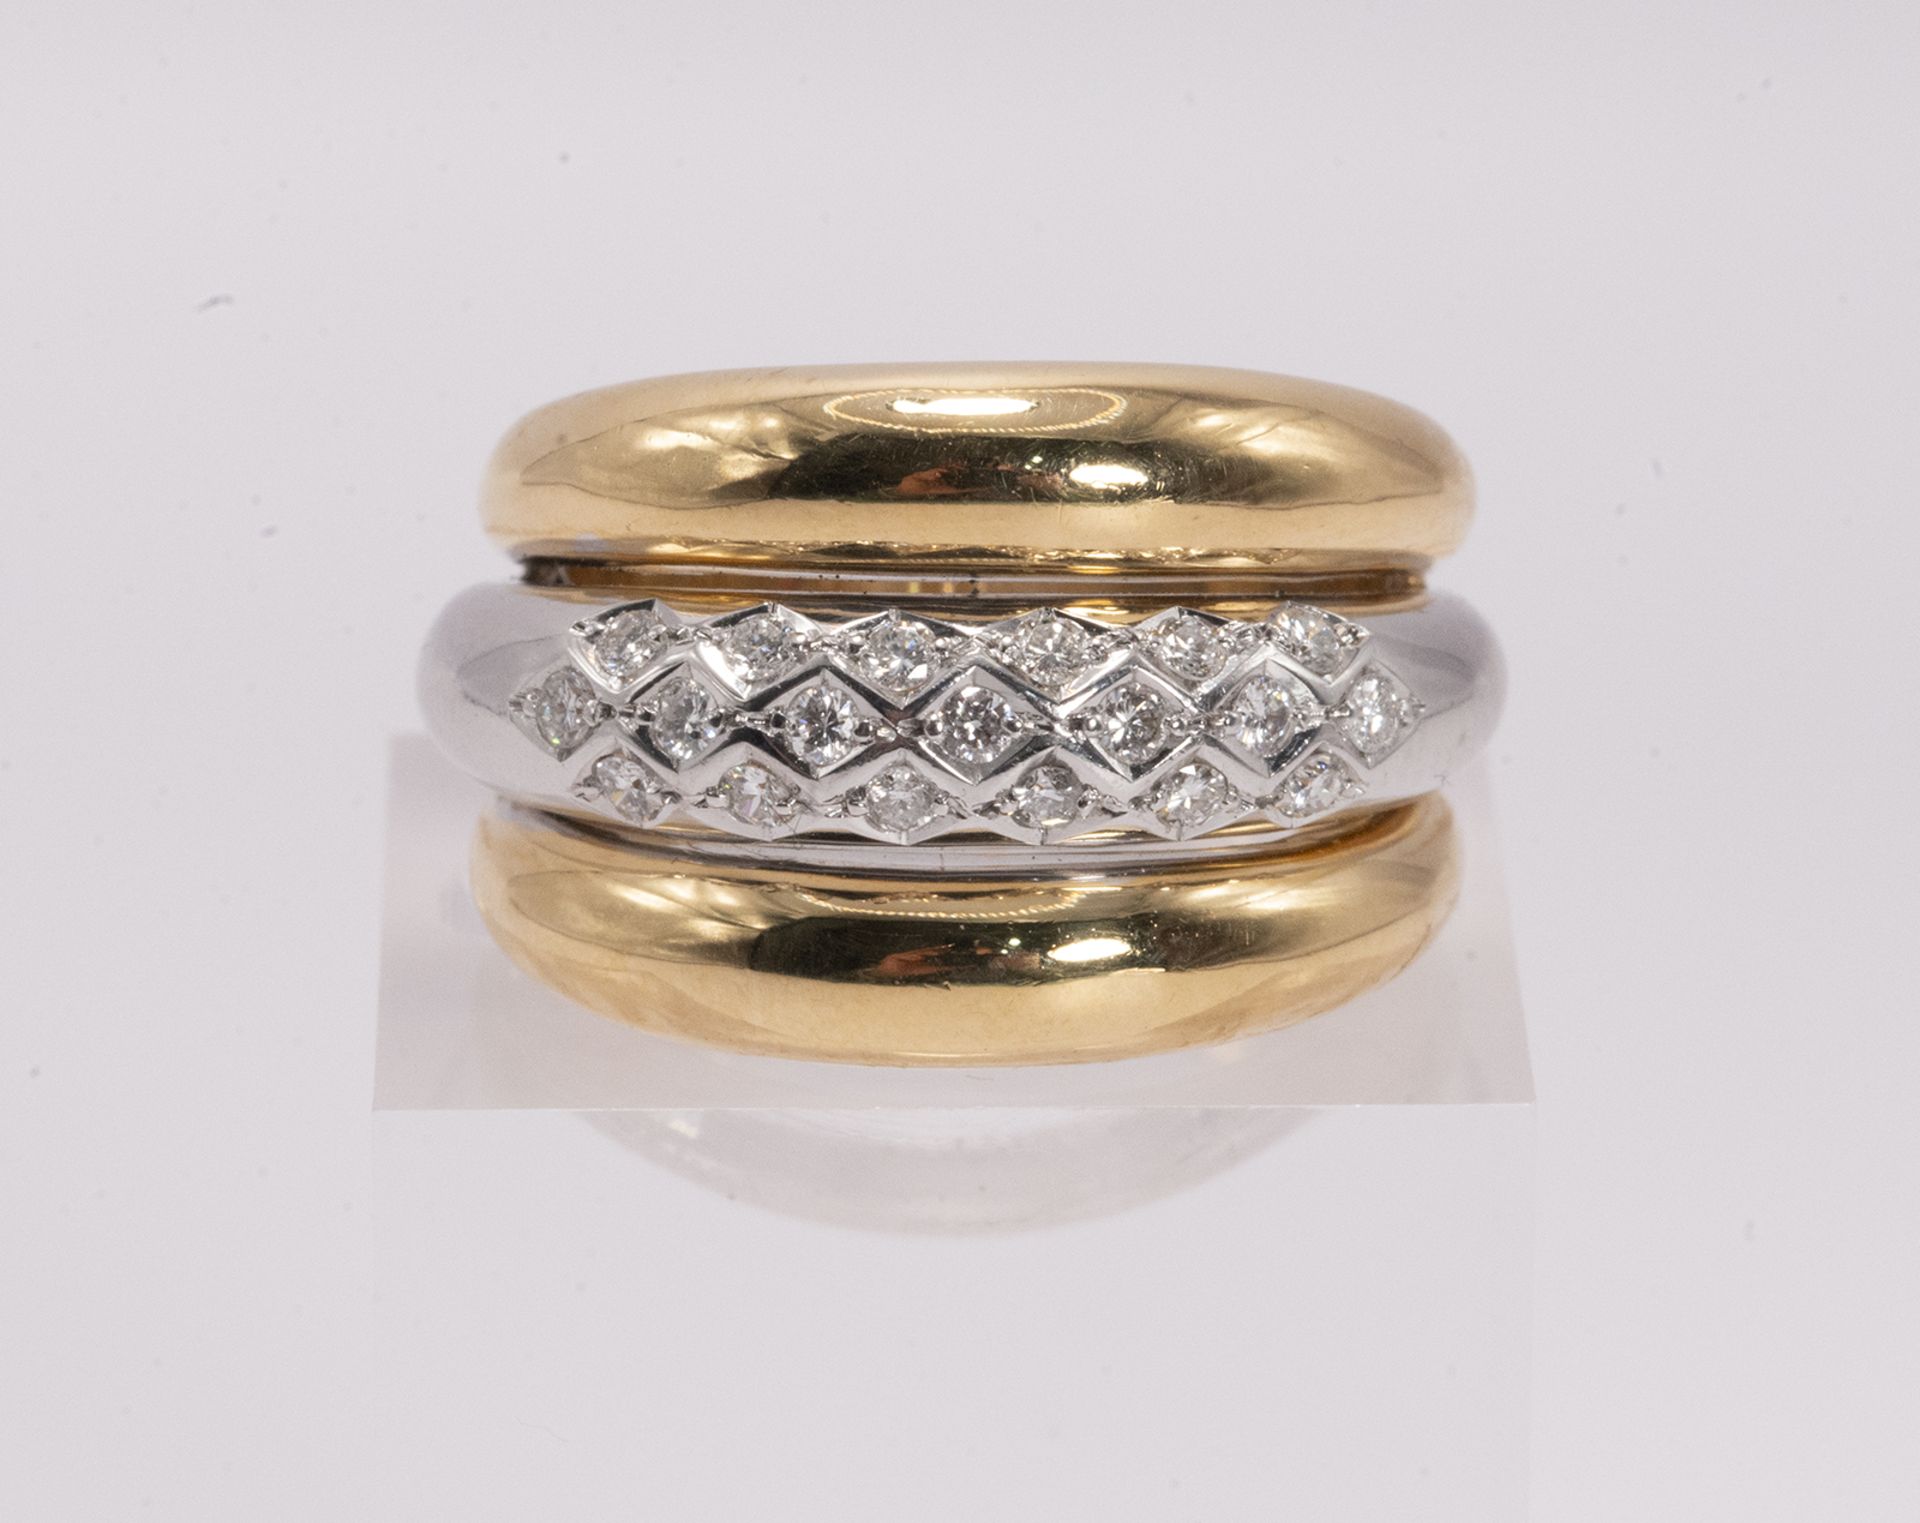 Two-tone Diamond Ring